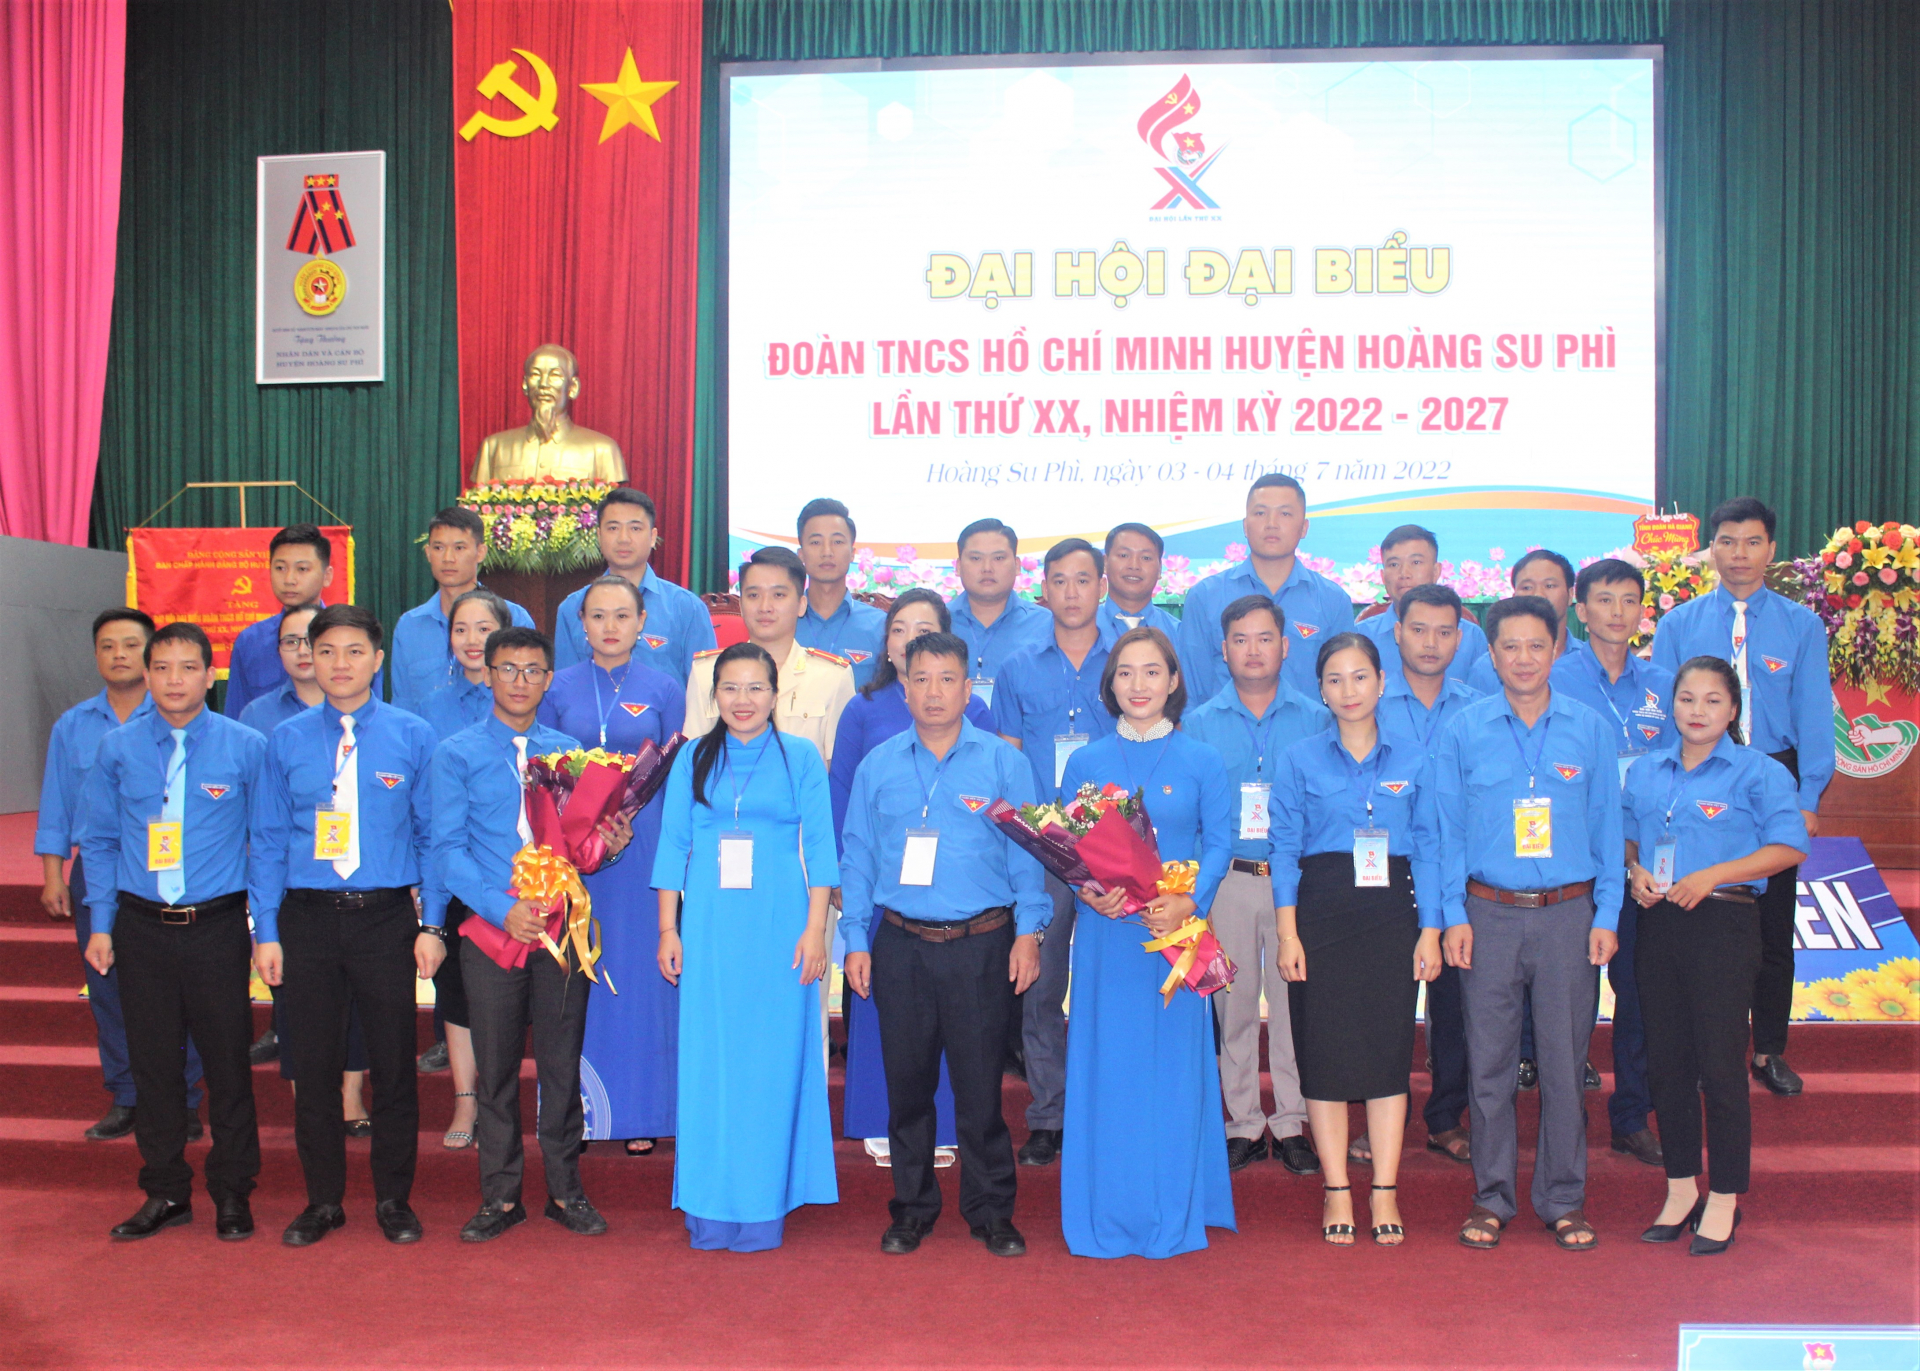 Lãnh đạo Tỉnh đoàn và huyện Hoàng Su Phì tặng hoa chúc mừng BCH Đoàn TNCS Hồ Chí Minh huyện Hoàng Su Phì khóa XX.